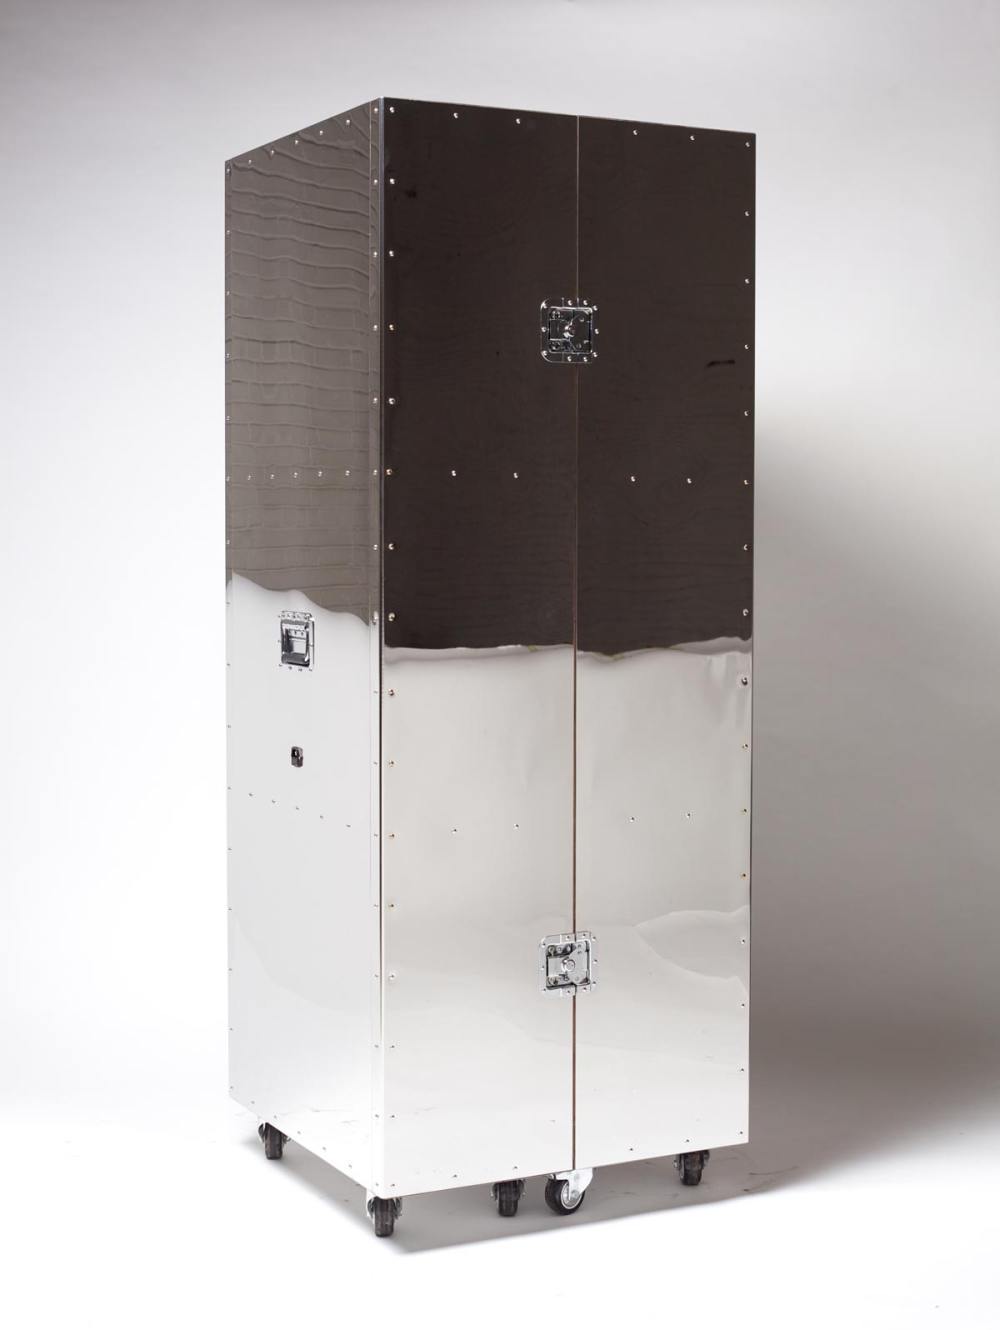 steel-crate-furniture-by-naihan-li-33.jpg